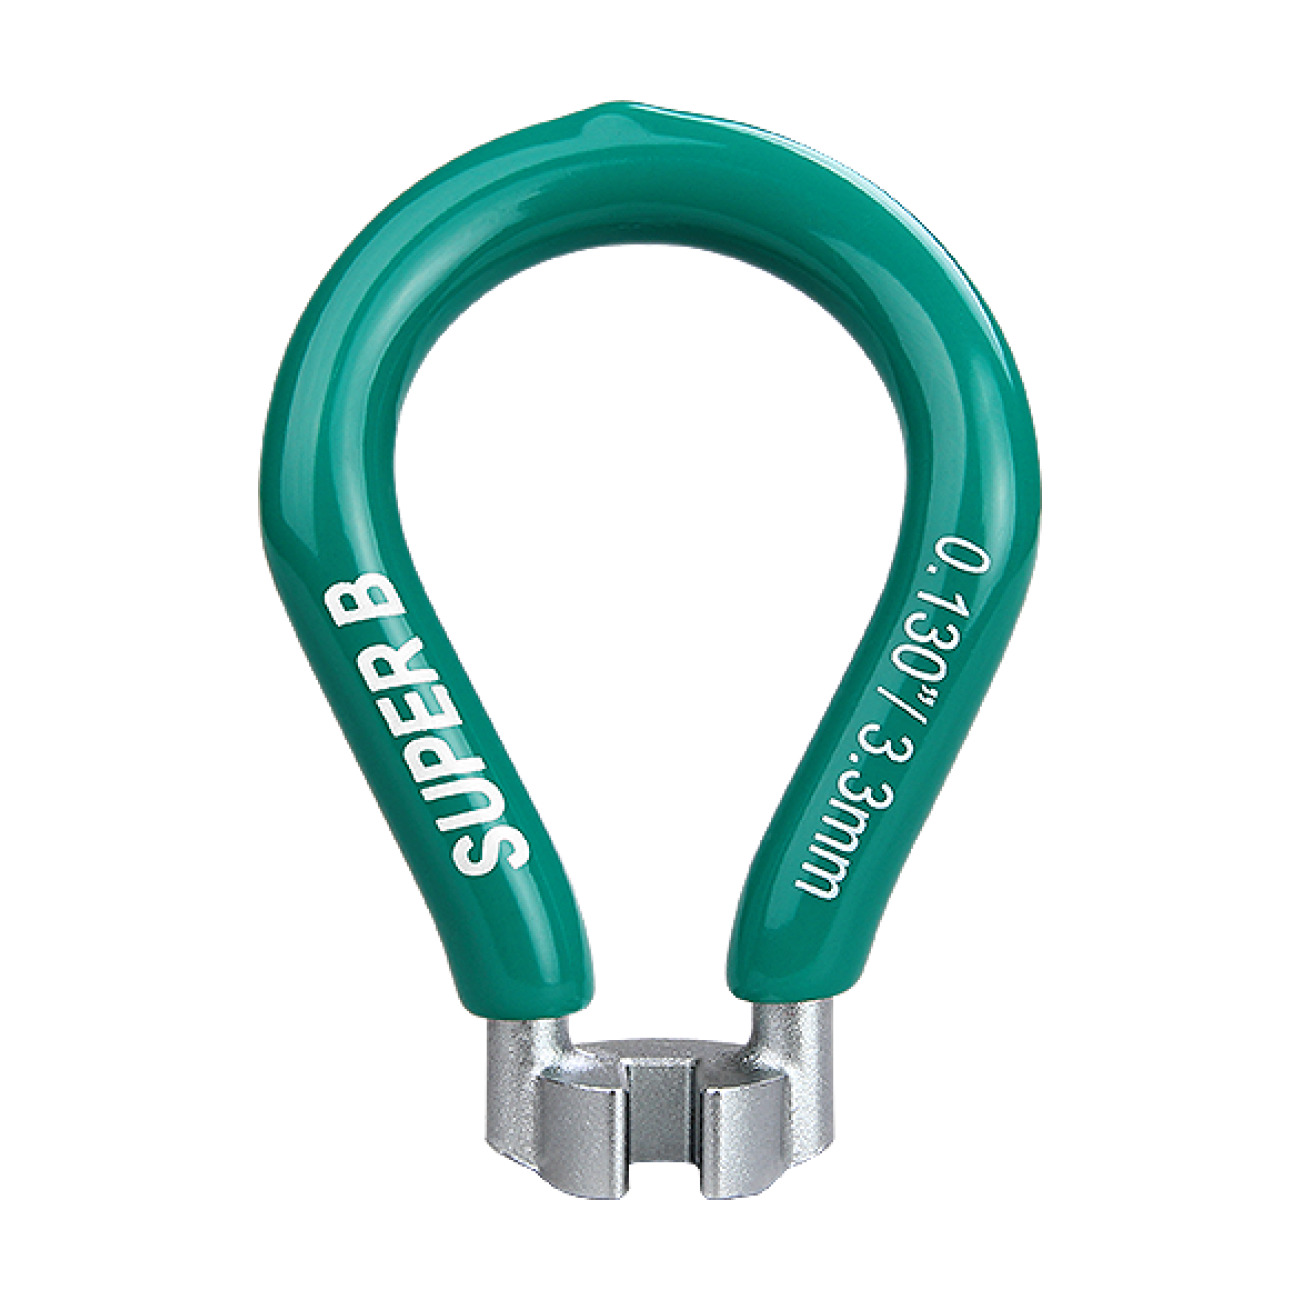 SUPER B Központosító Kulcs - CENTERING KEY TB-5550 - Zöld